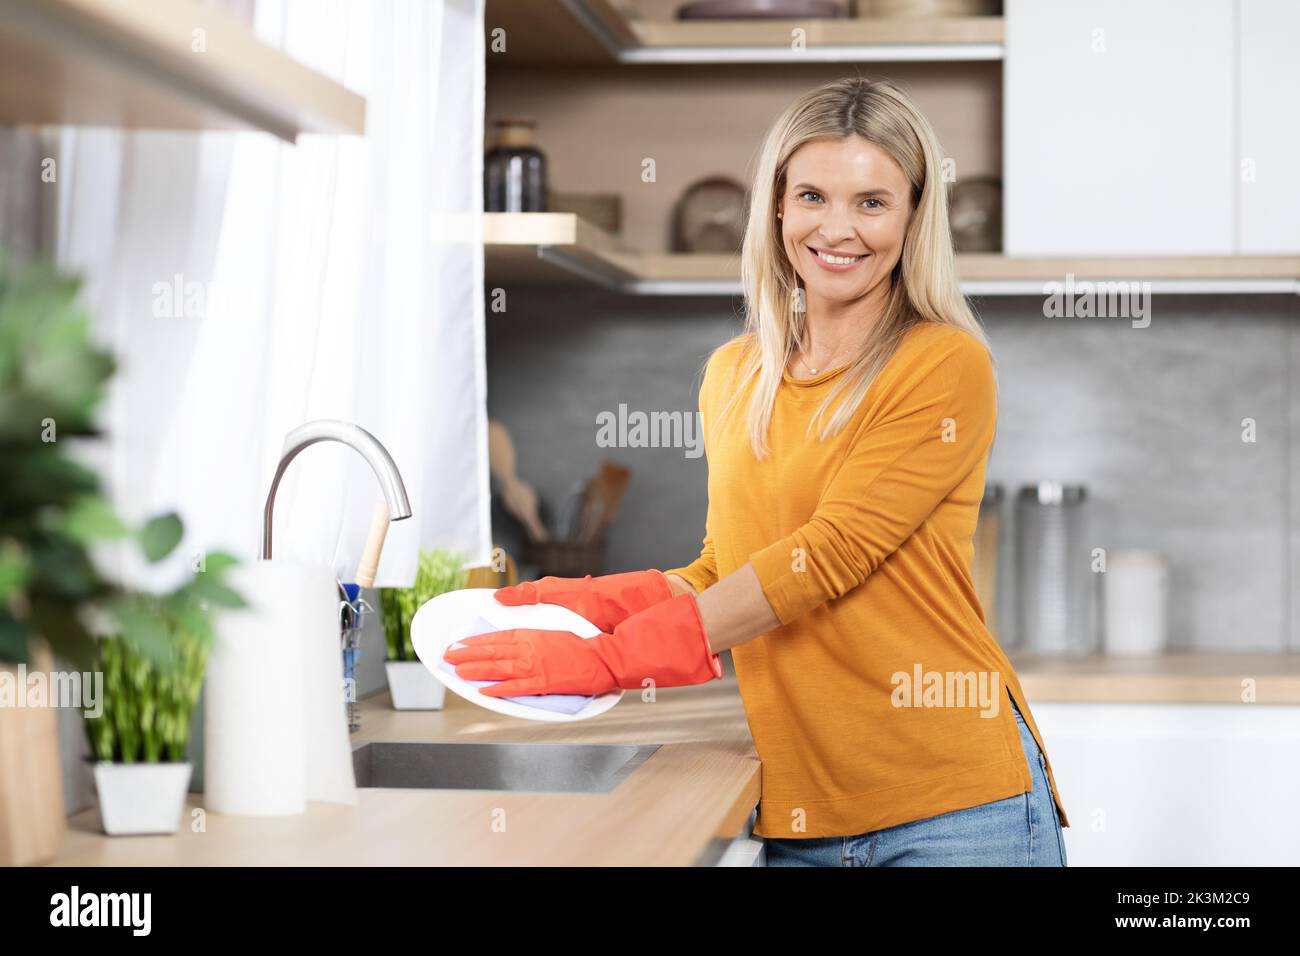 Fröhliche schöne blonde Frau Geschirr waschen zu Hause Stockfoto